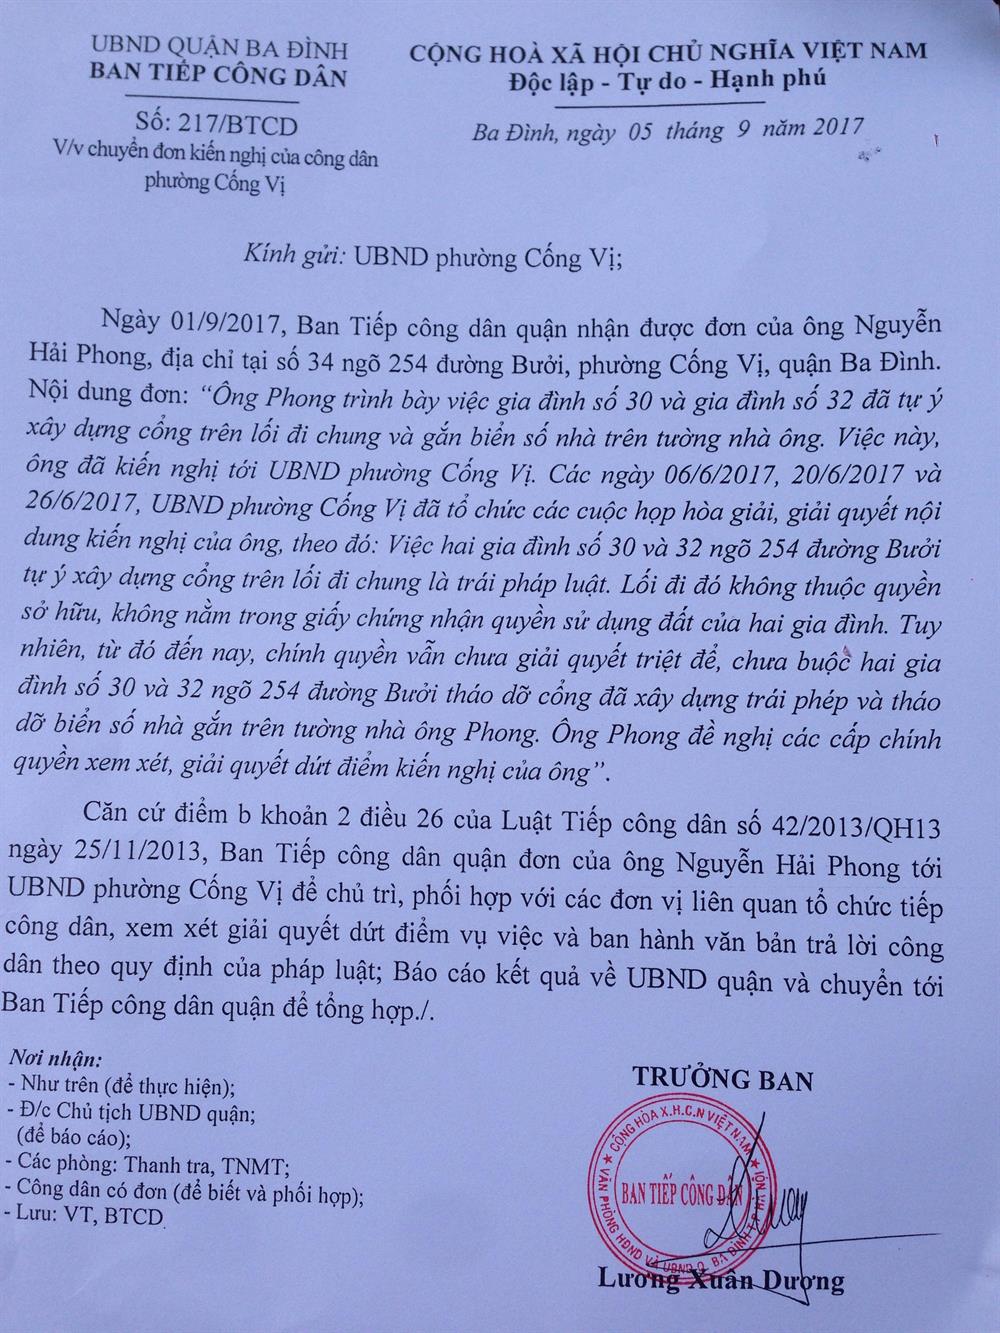 Văn bản của Ban tiếp công dân của quận Ba Đình gửi UBND phường Cống vị yêu cầu báo cáo vụ việc. 